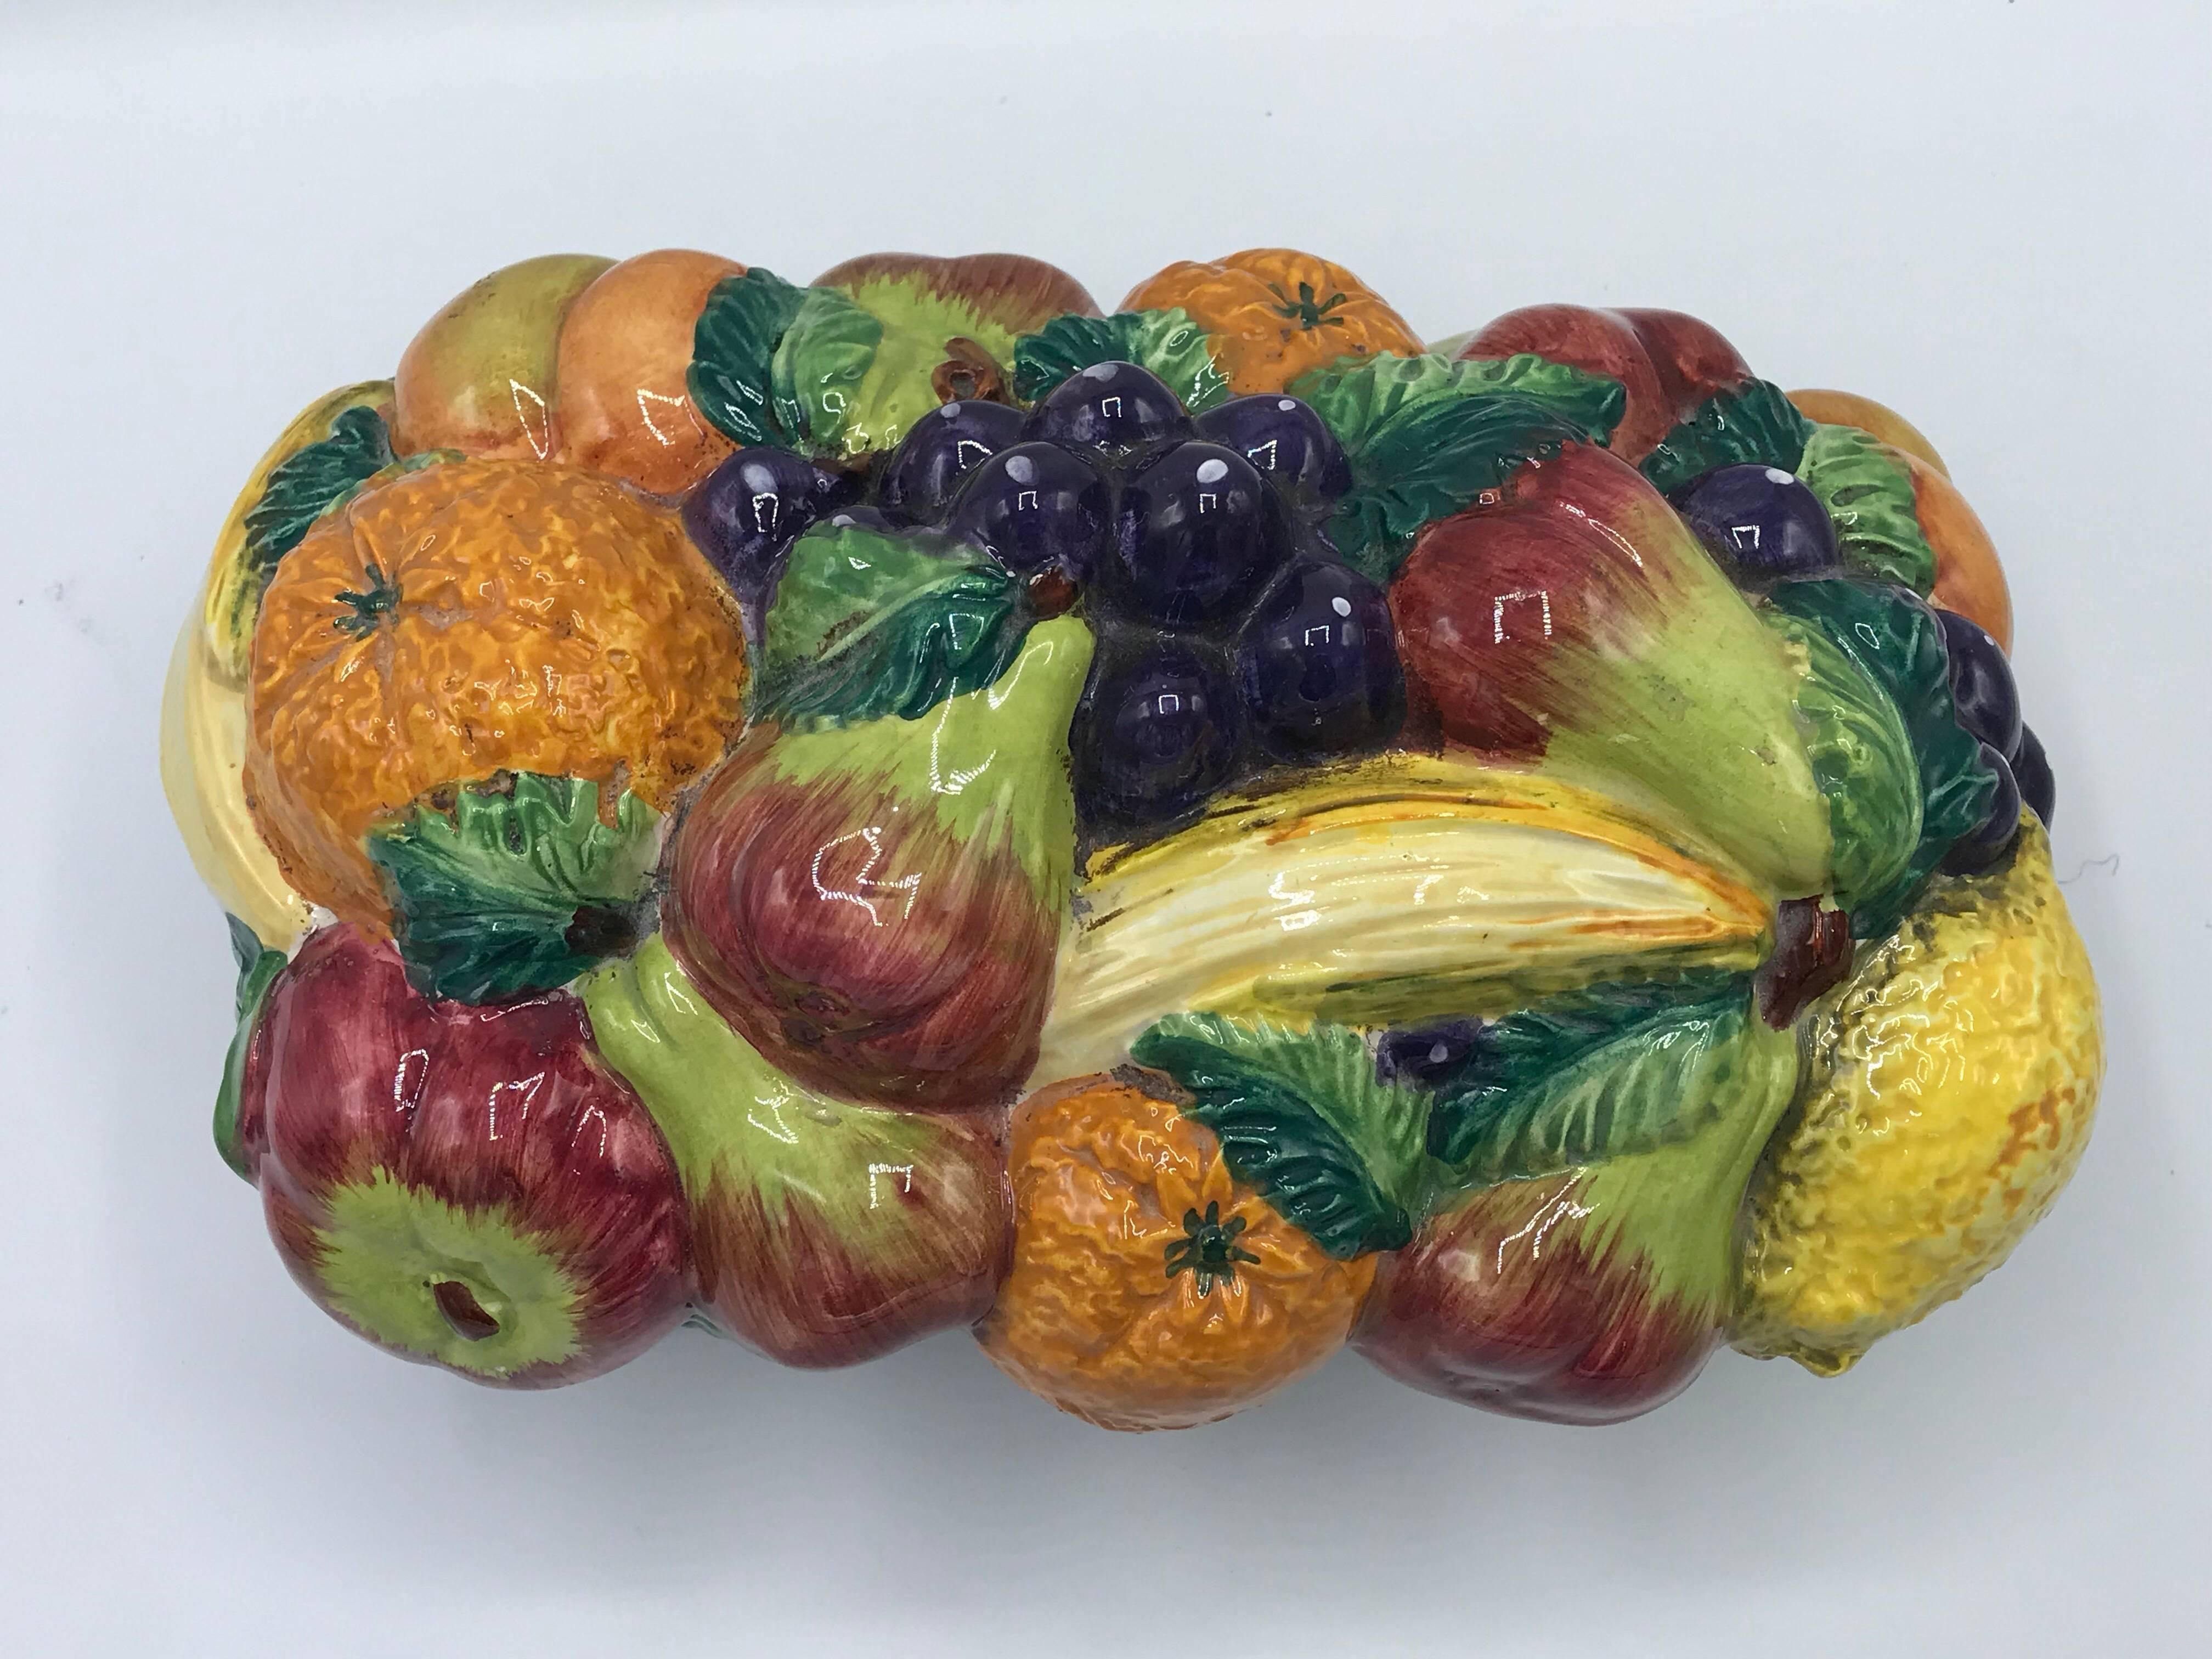 Glazed 1960s Italian Ceramic Fruit Bowl Centerpiece Sculpture